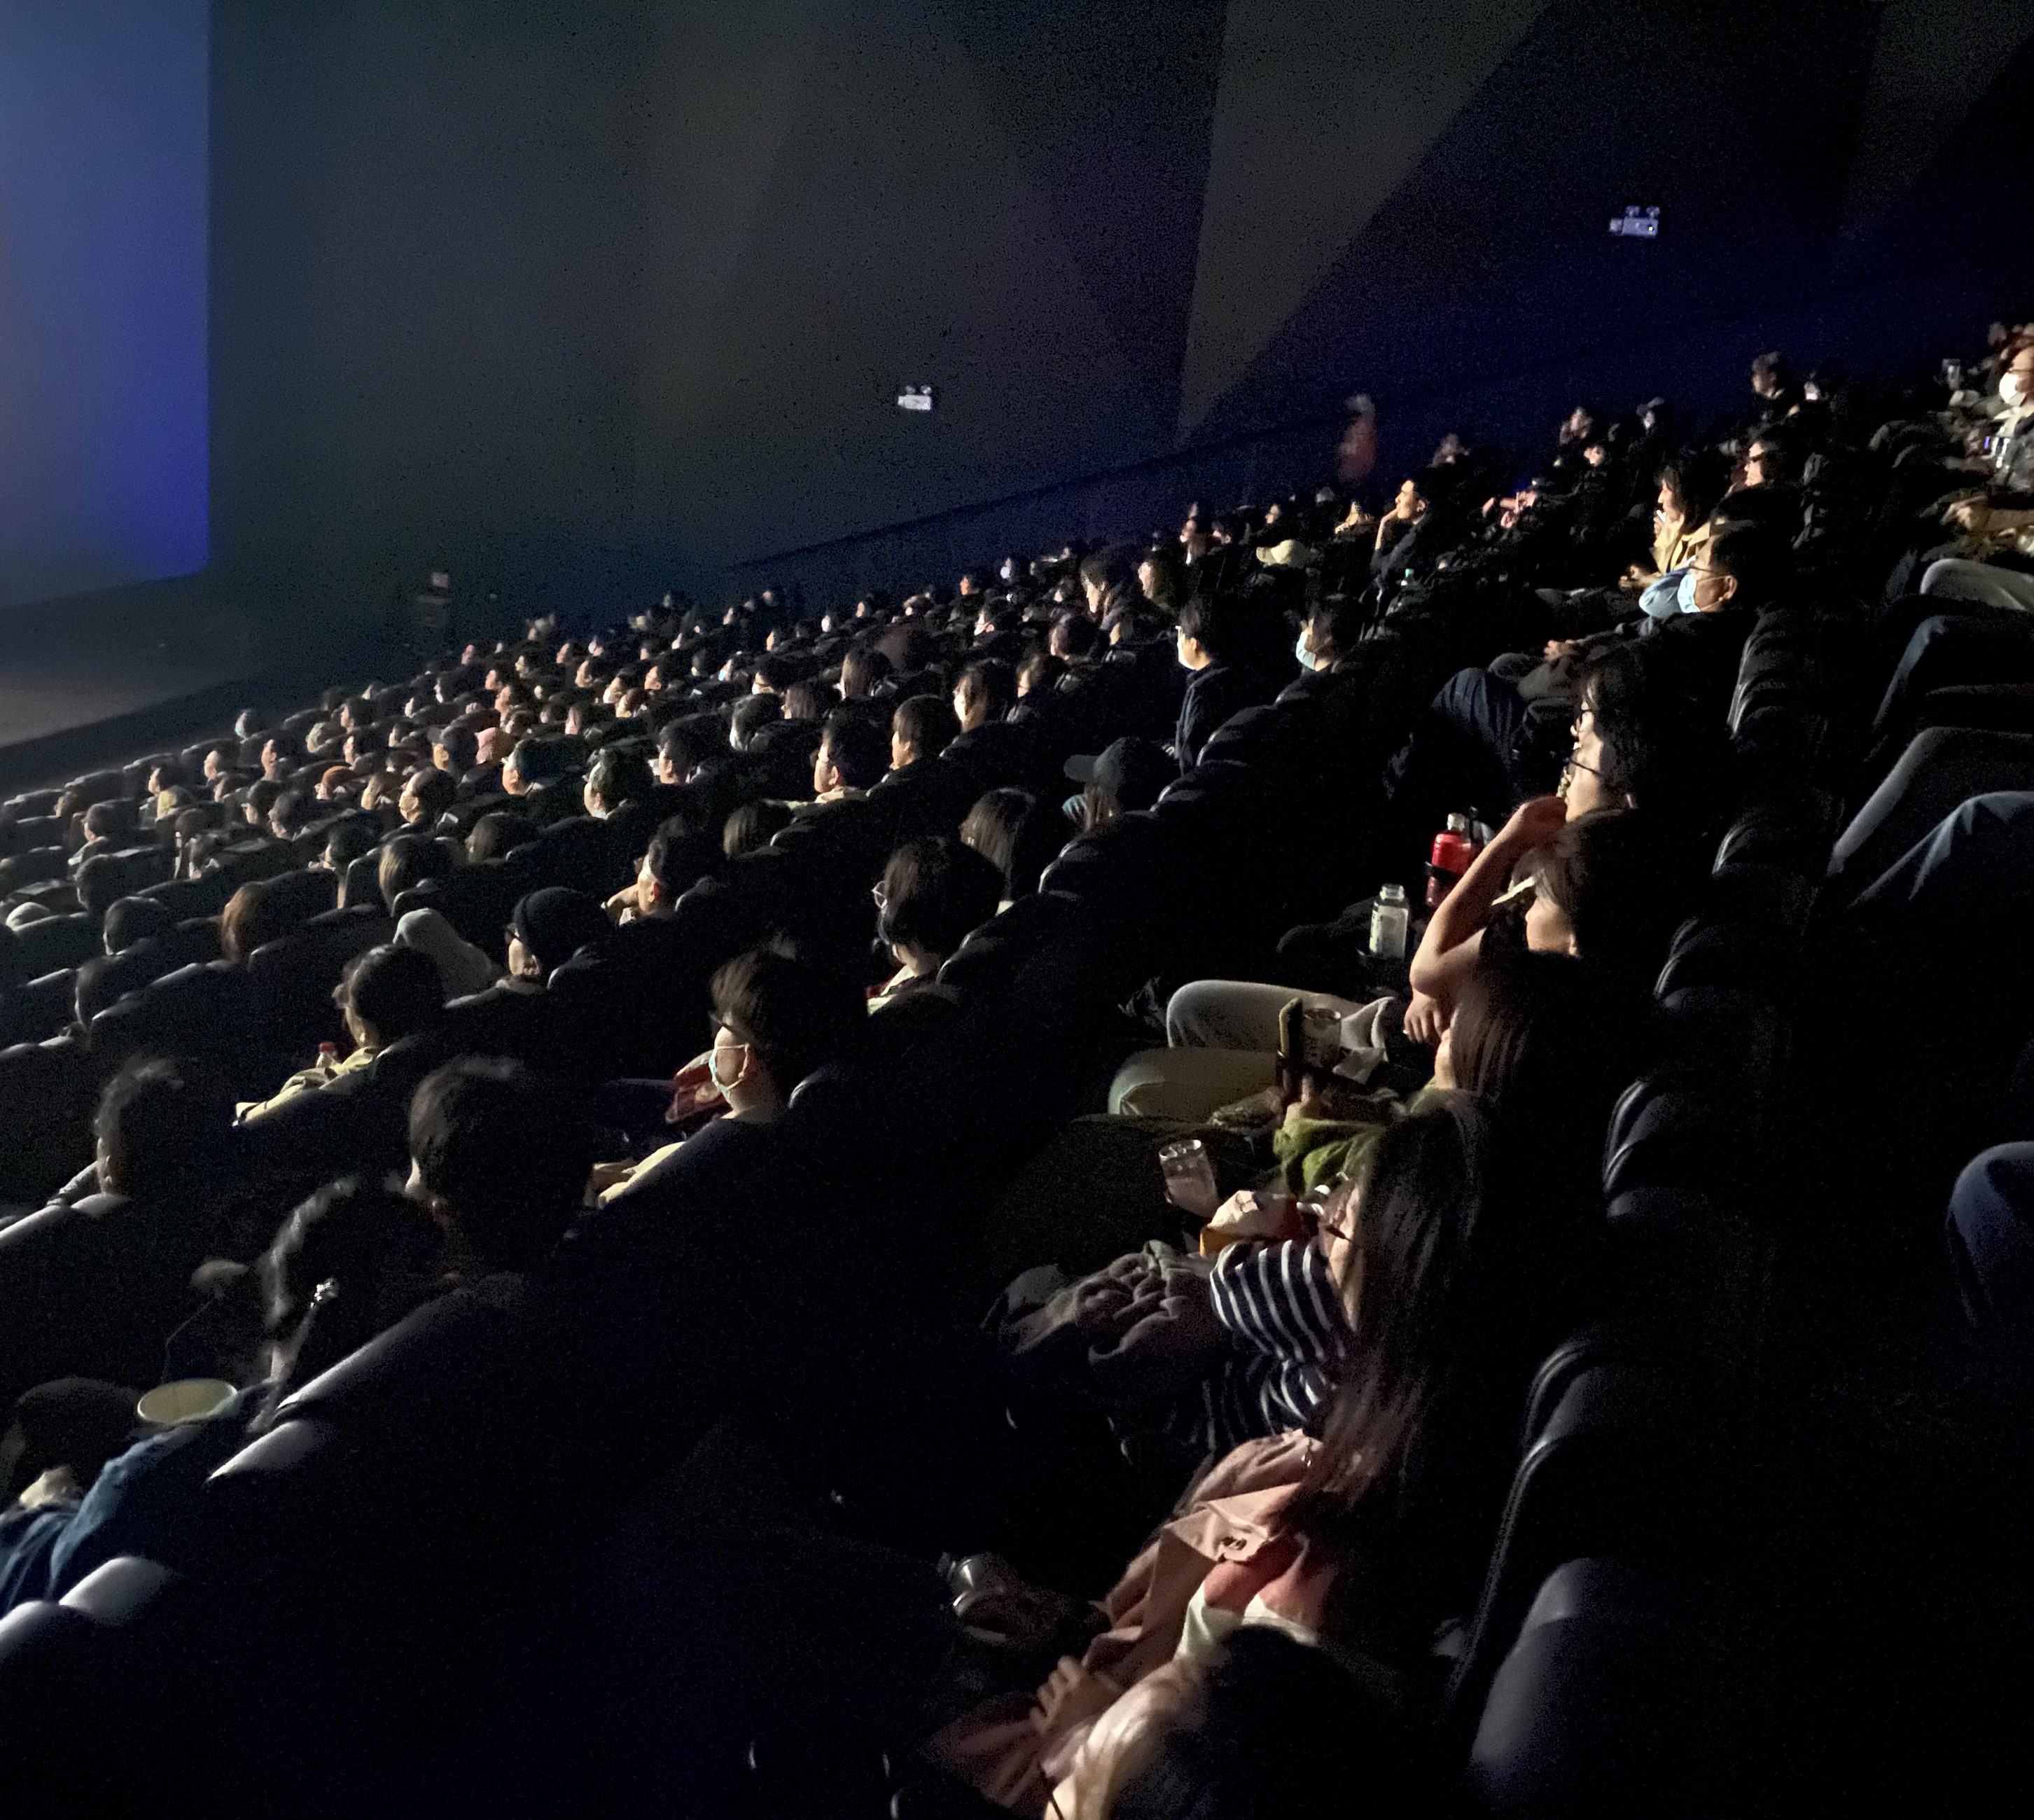 第13回北京国際映画祭にて「ルパン三世VSキャッツ・アイ」上映レポート